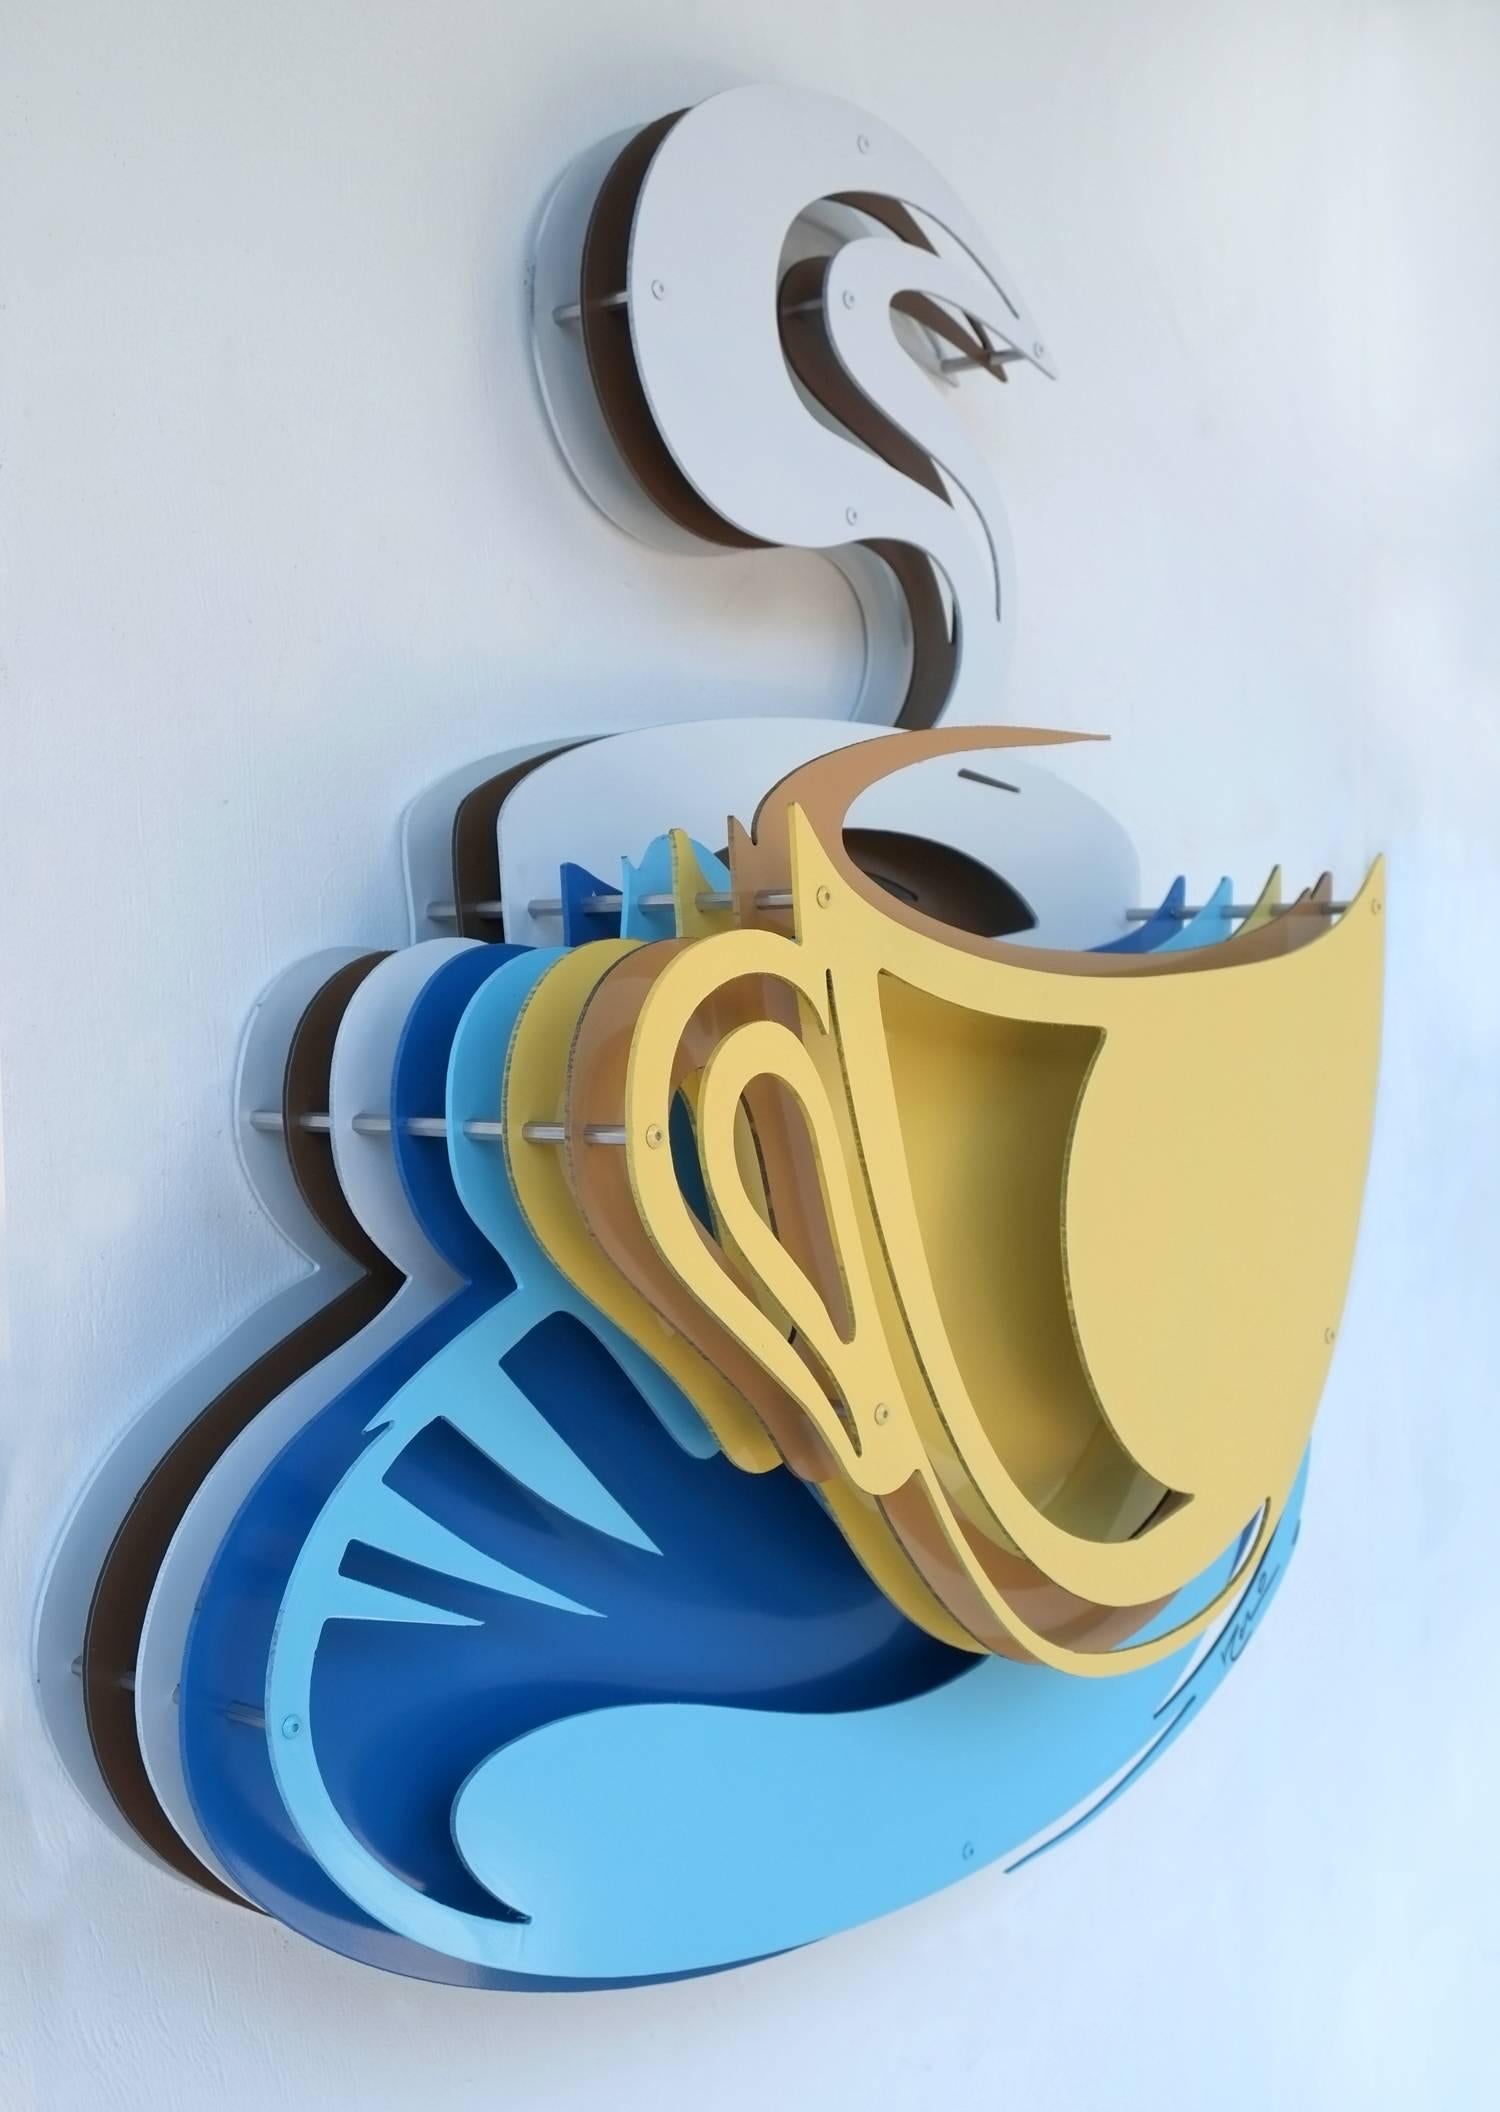 Couchtisch – Gelb auf Blau – Sculpture von Michael Kalish